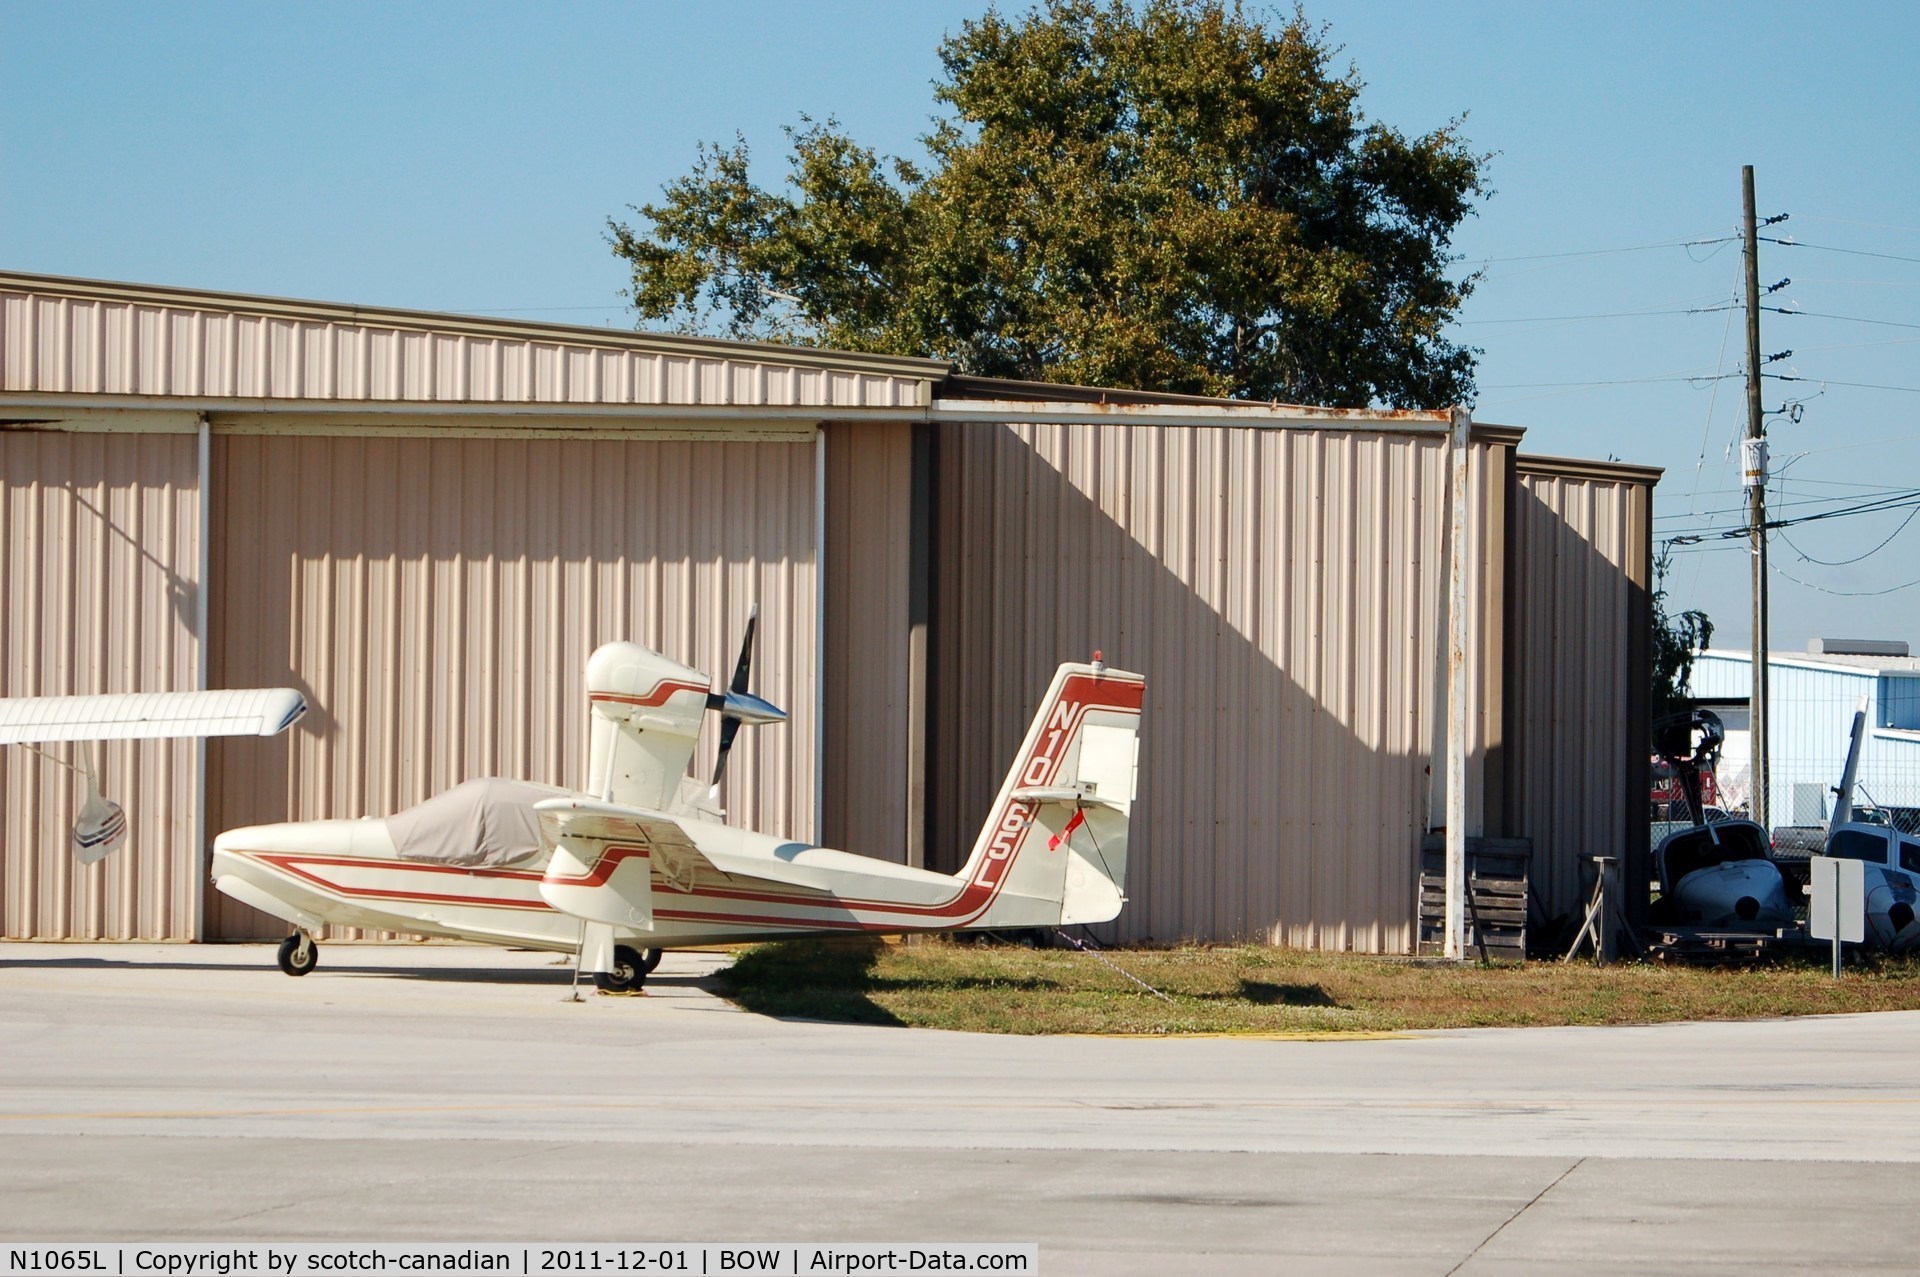 N1065L, 1975 Lake LA-4-200 Buccaneer C/N 658, 1975 Lake LA-4-200 N1065L at Bartow Municipal Airport, Bartow, FL